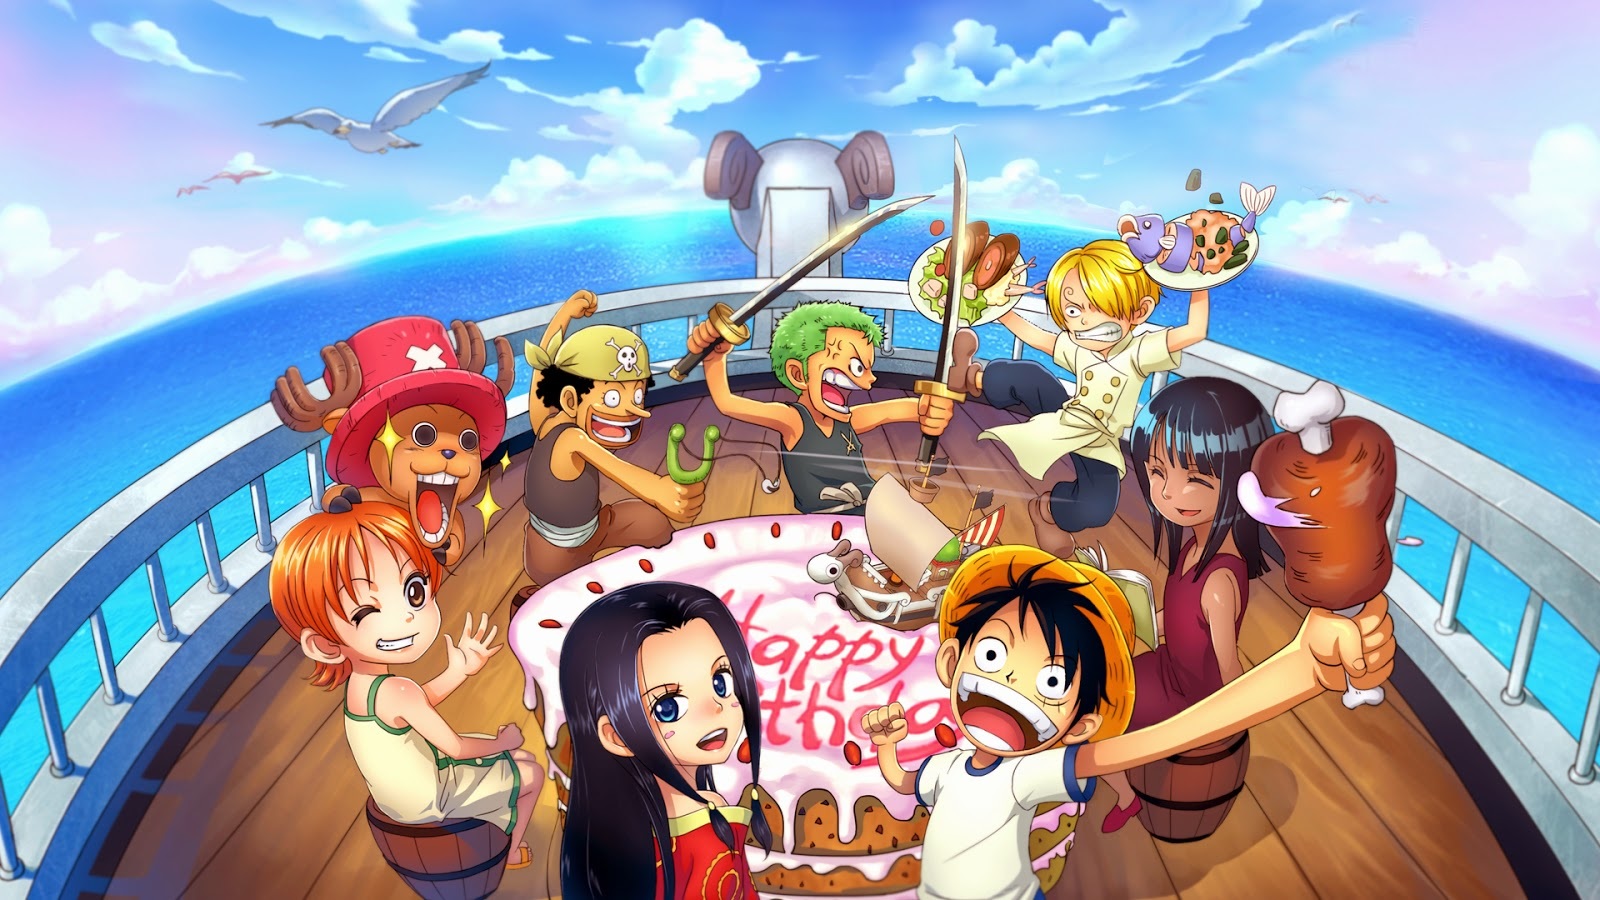 Anime One Piece - Hãy khám phá thế giới phiêu lưu đầy màu sắc của Anime One Piece. Với những nhân vật độc đáo, câu chuyện cảm động và hấp dẫn, One Piece sẽ làm mãn nhãn những fan của thể loại anime.